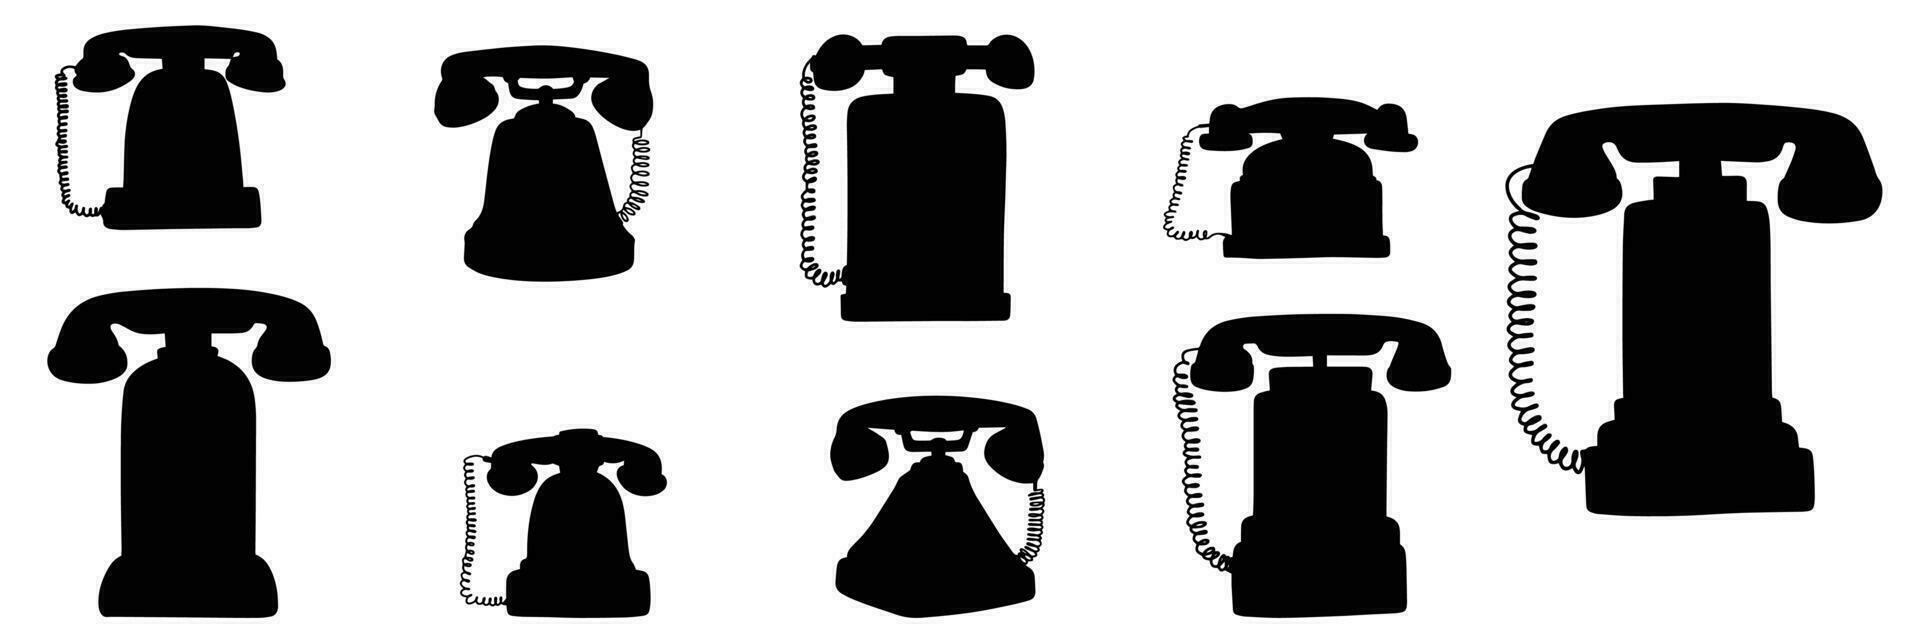 collezione di retrò telefoni silhouette. mano disegnato telefono vettore illustrazione.